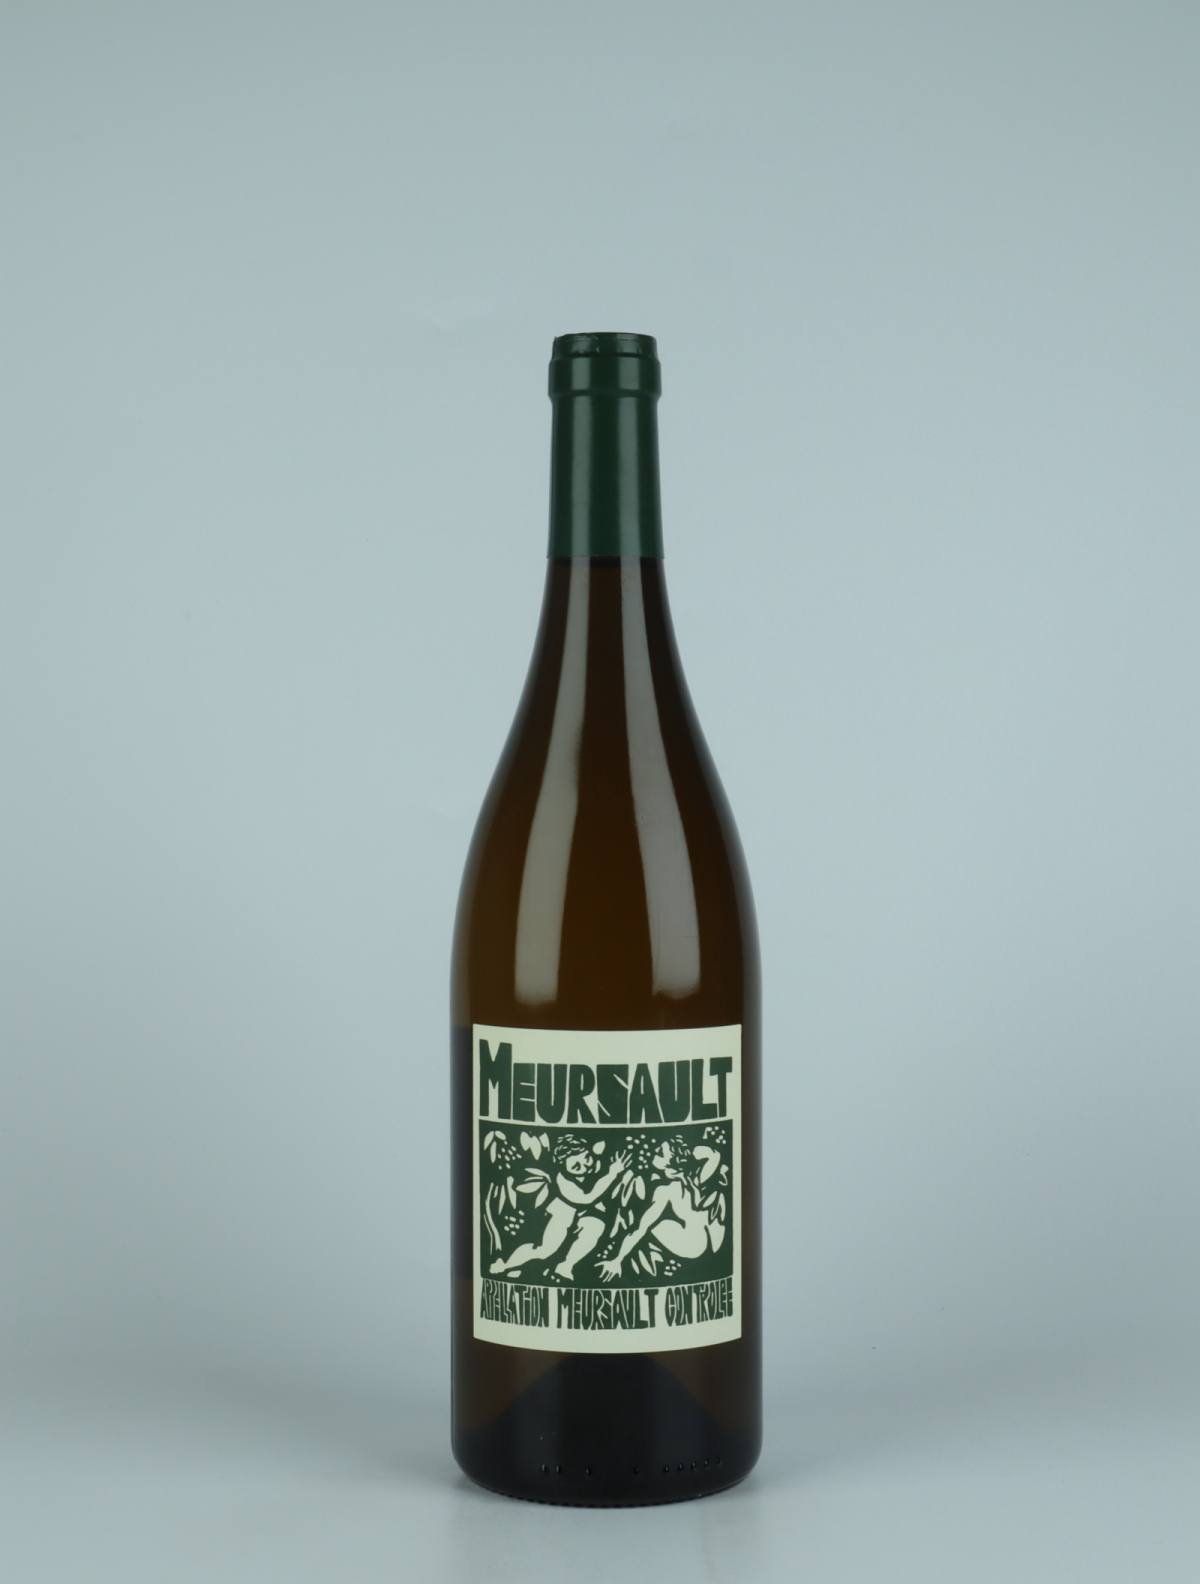 A bottle 2020 Meursault White wine from La Sœur Cadette, Burgundy in France